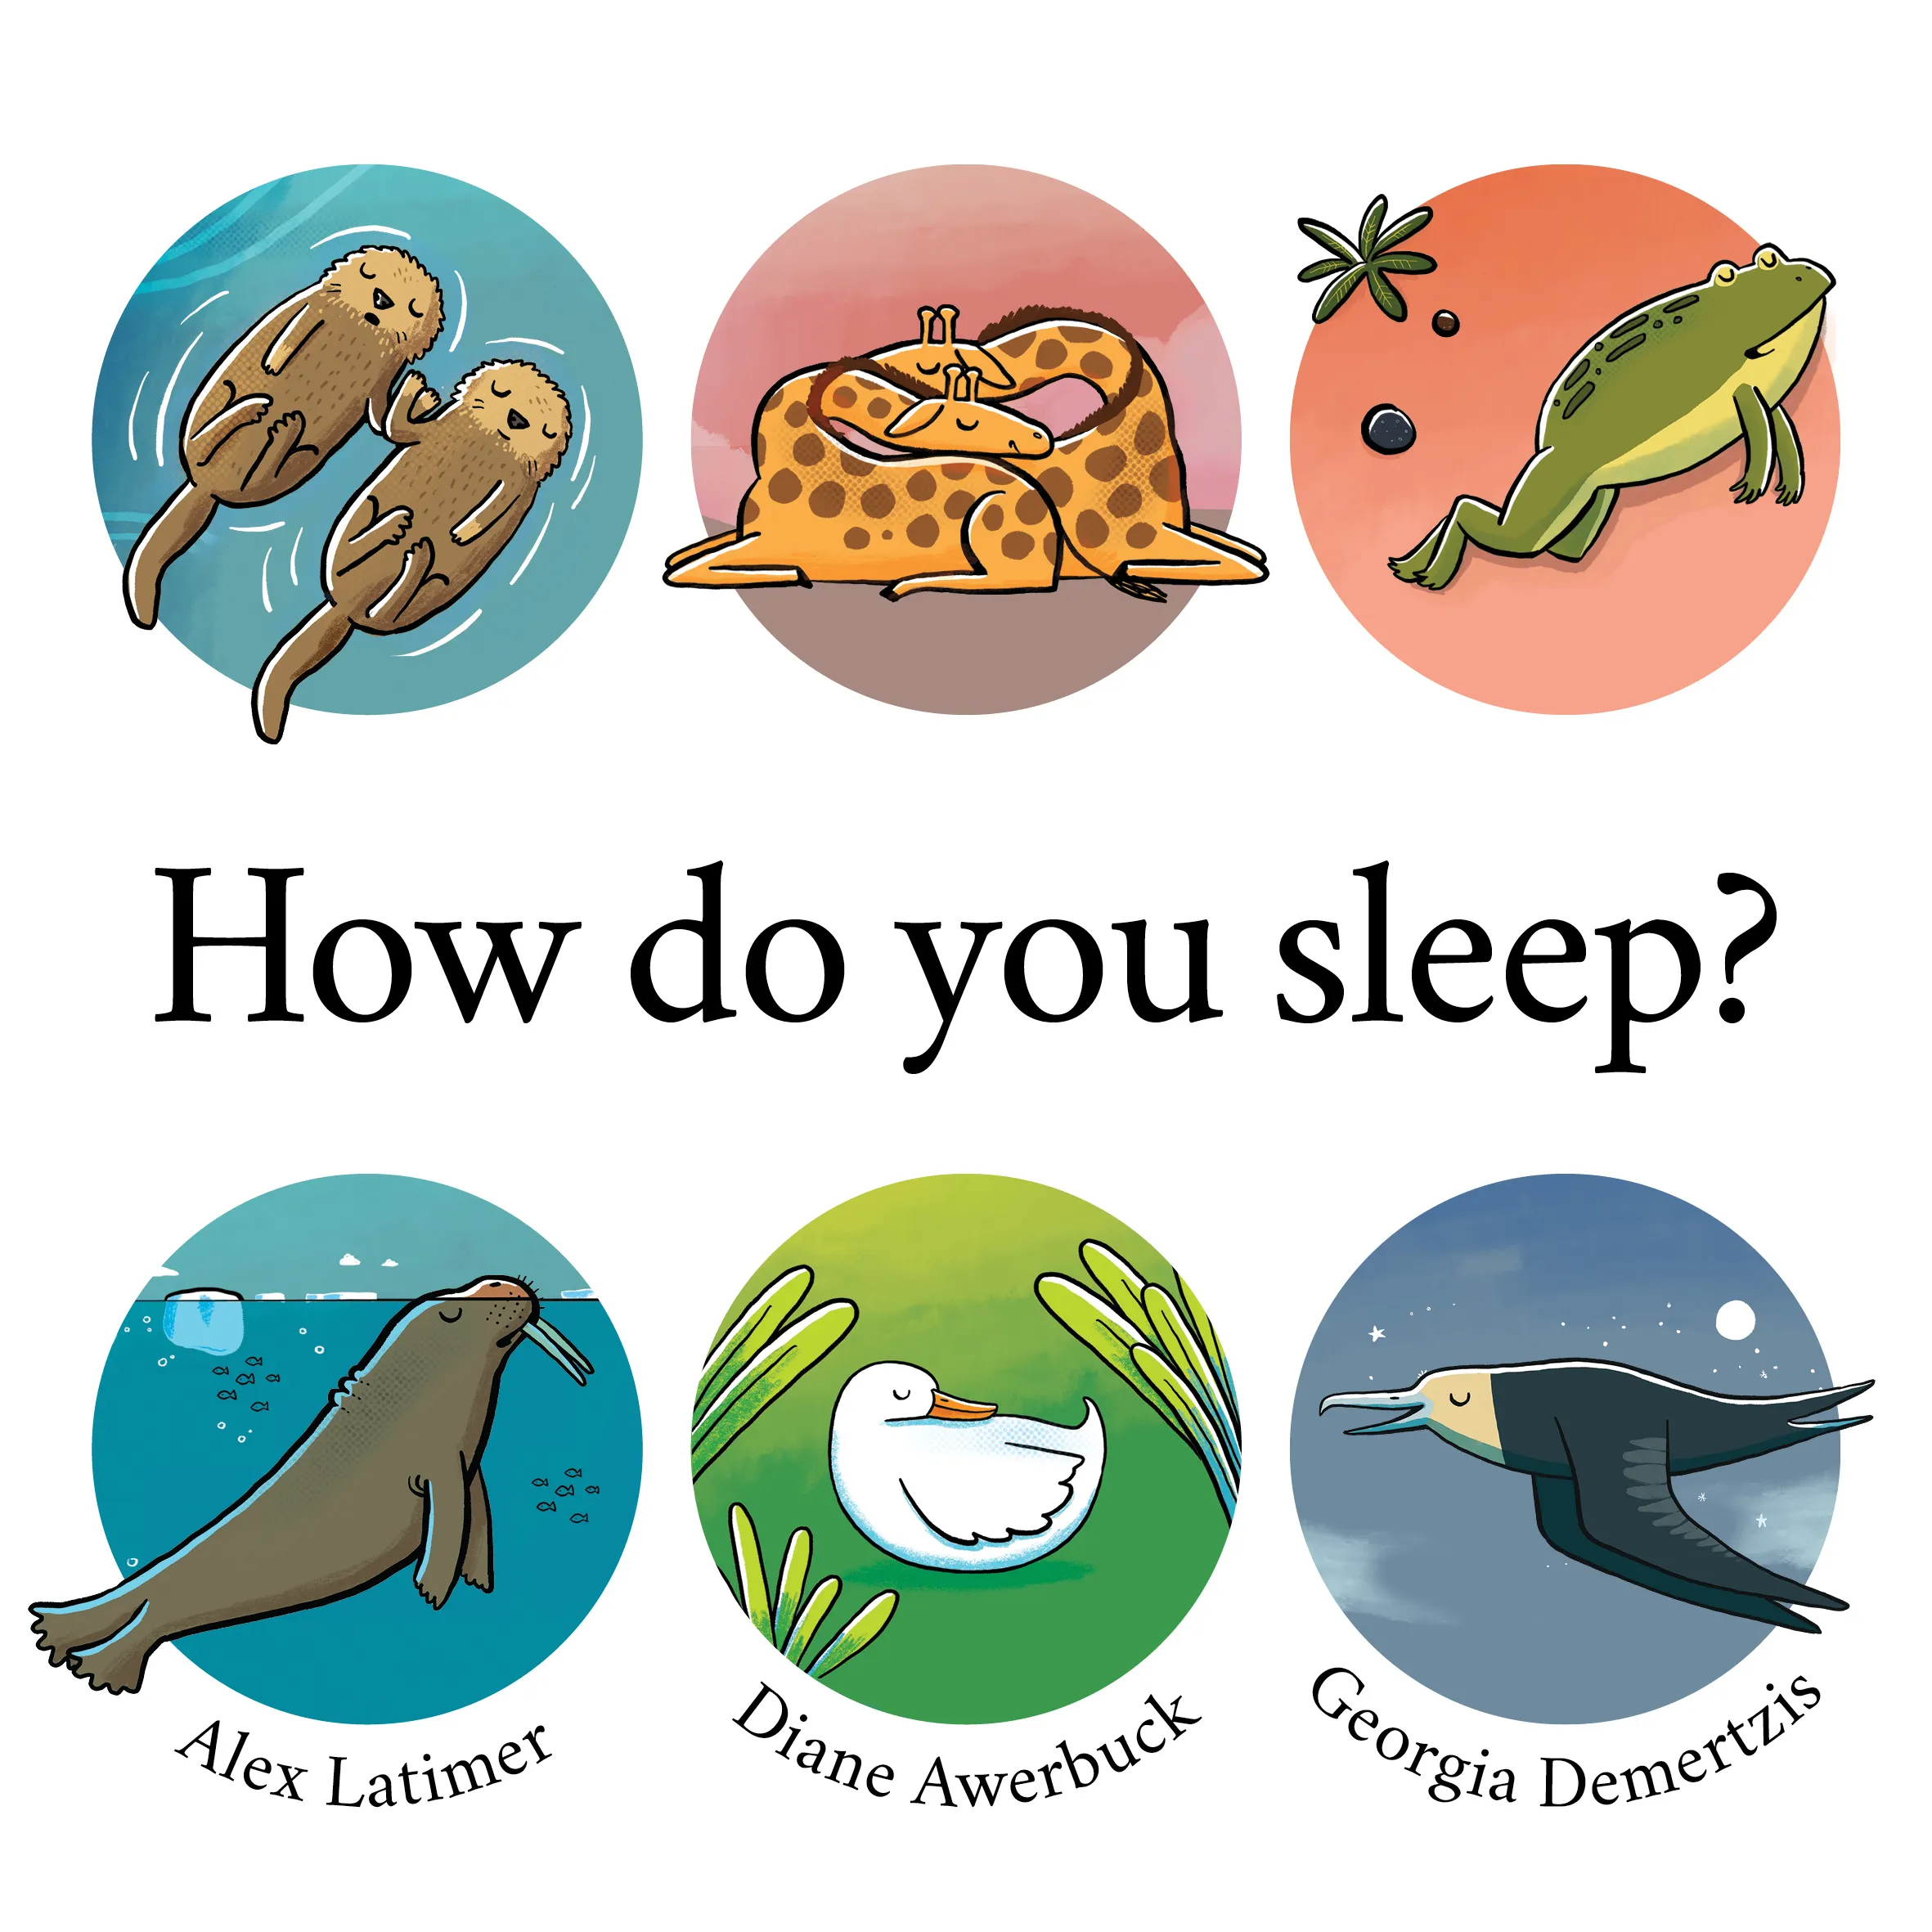 How do you sleep?